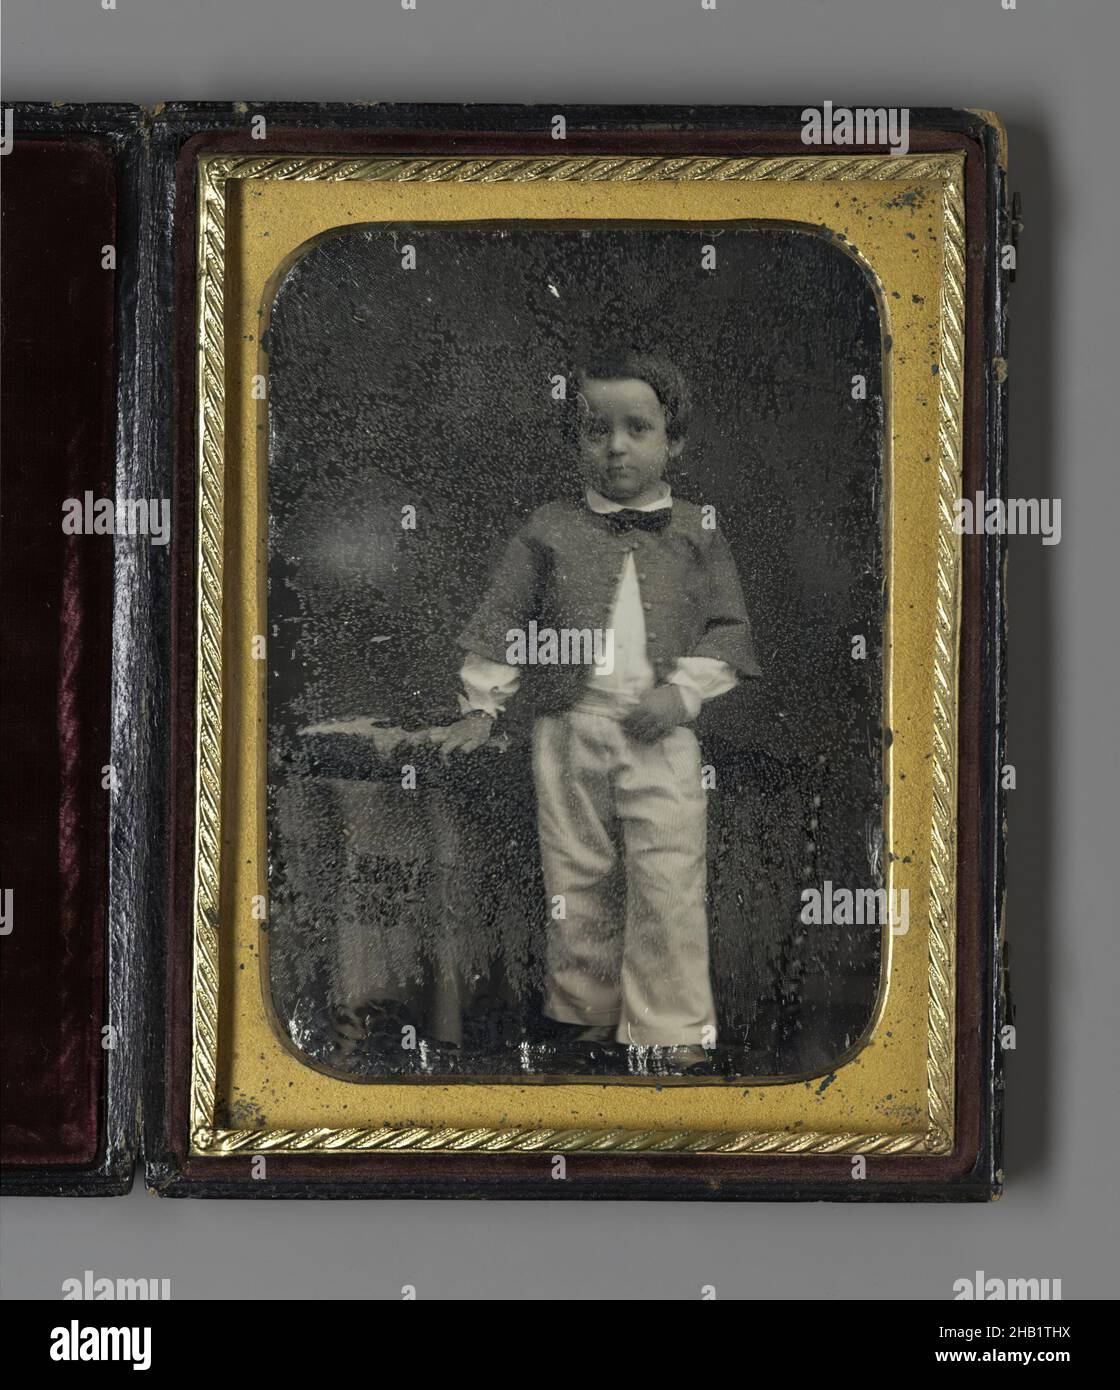 Portrait of Standing Boy, Daguerreotype, n.d., Bild, Anblick: 3 5/8 x 2 5/8 Zoll, 9,2 x 6,7 cm, 19th Jahrhundert, amerikanisch, schwarz und weiß, Fliege, Junge, Fall, Kind, Kinder, Daguerreotypie, Daguerrotype, angezogen, angezogen, lulkoek, männliche Figur, Miniatur, Fotografie, Porträt Stockfoto